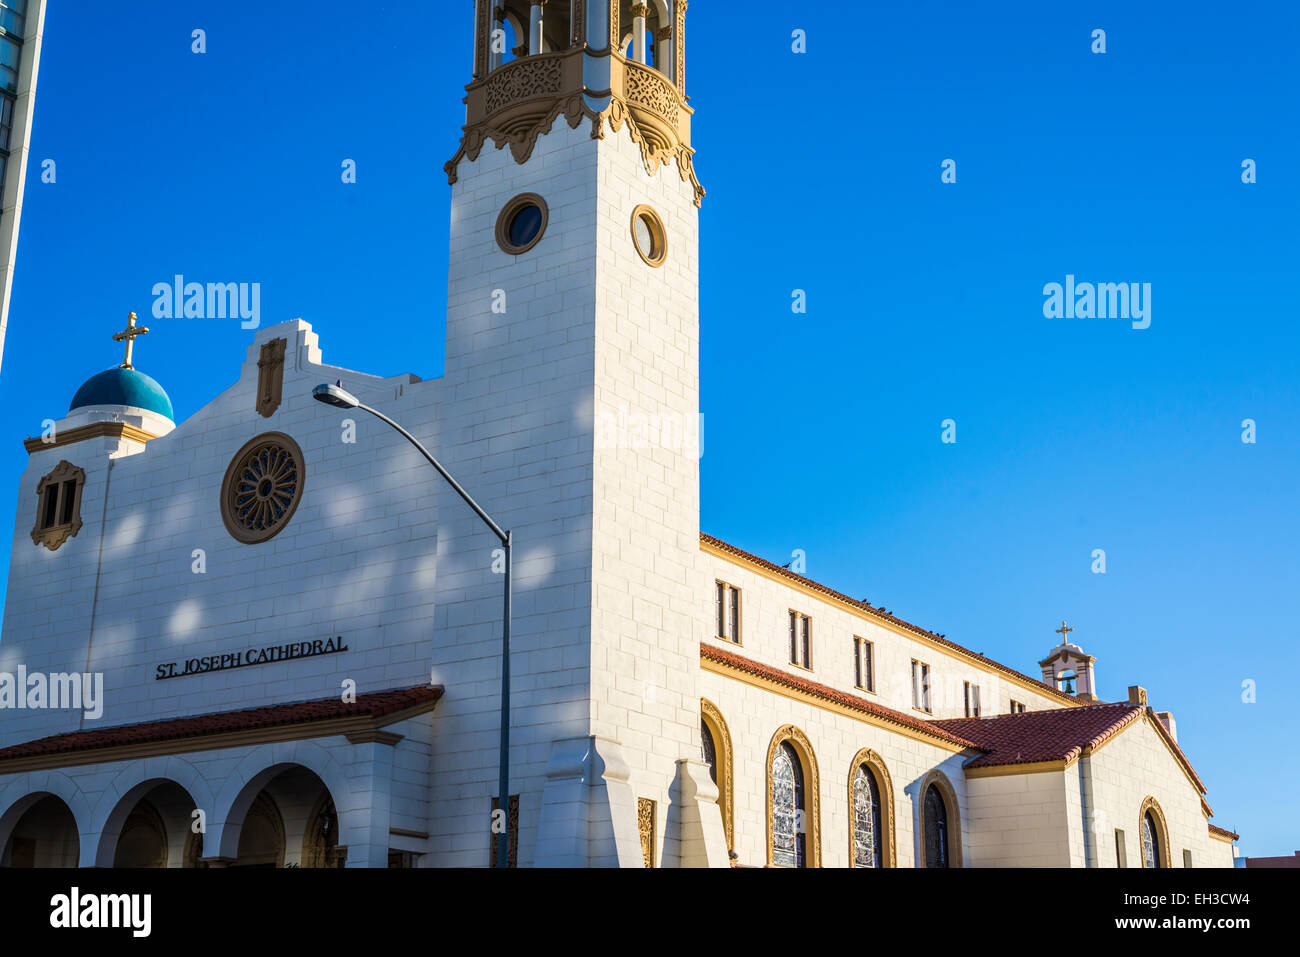 St. Joseph römisch-katholische Kathedrale. Das Hotel liegt im Zentrum von San Diego, California, United States. Stockfoto